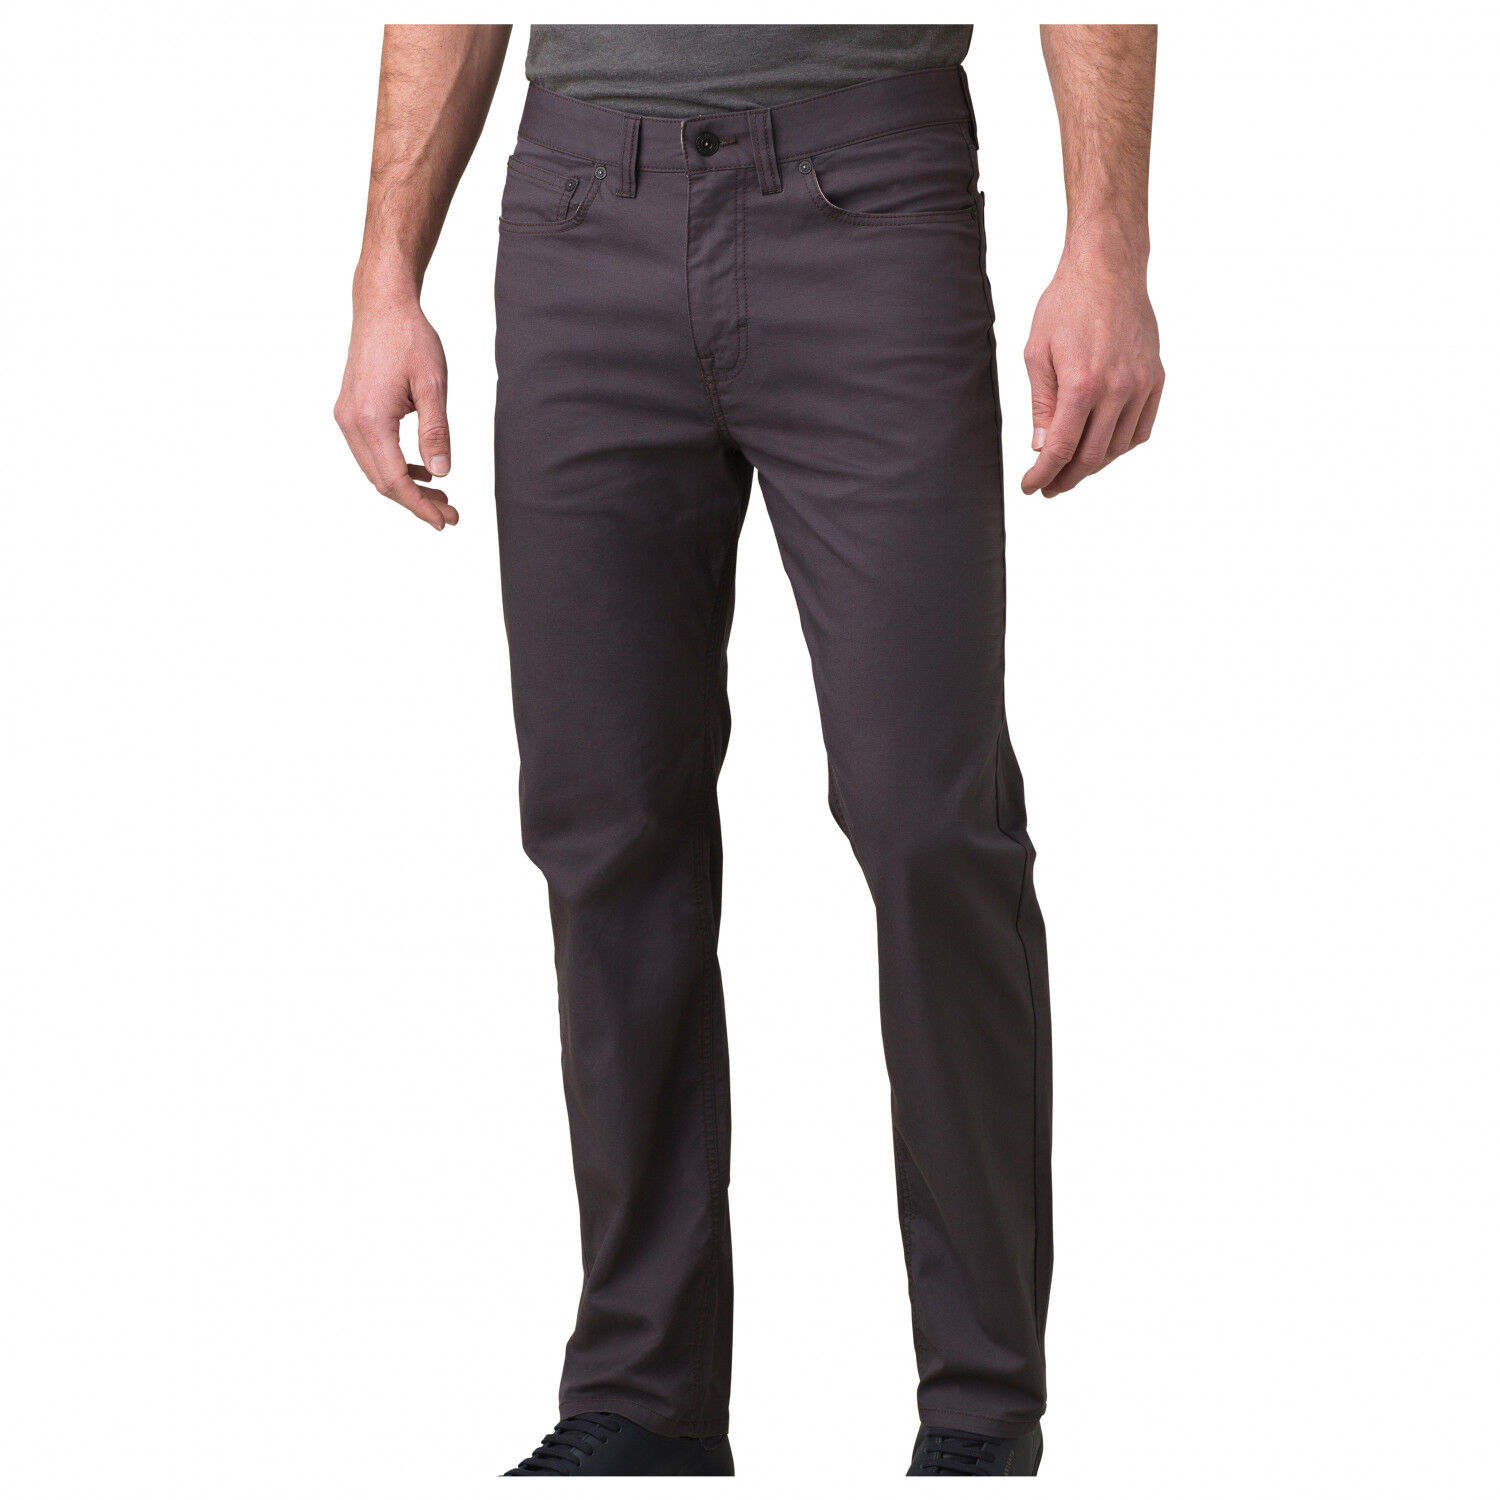 Prana Ulterior Pant 32"" Inseam - Outdoor trousers - Men's